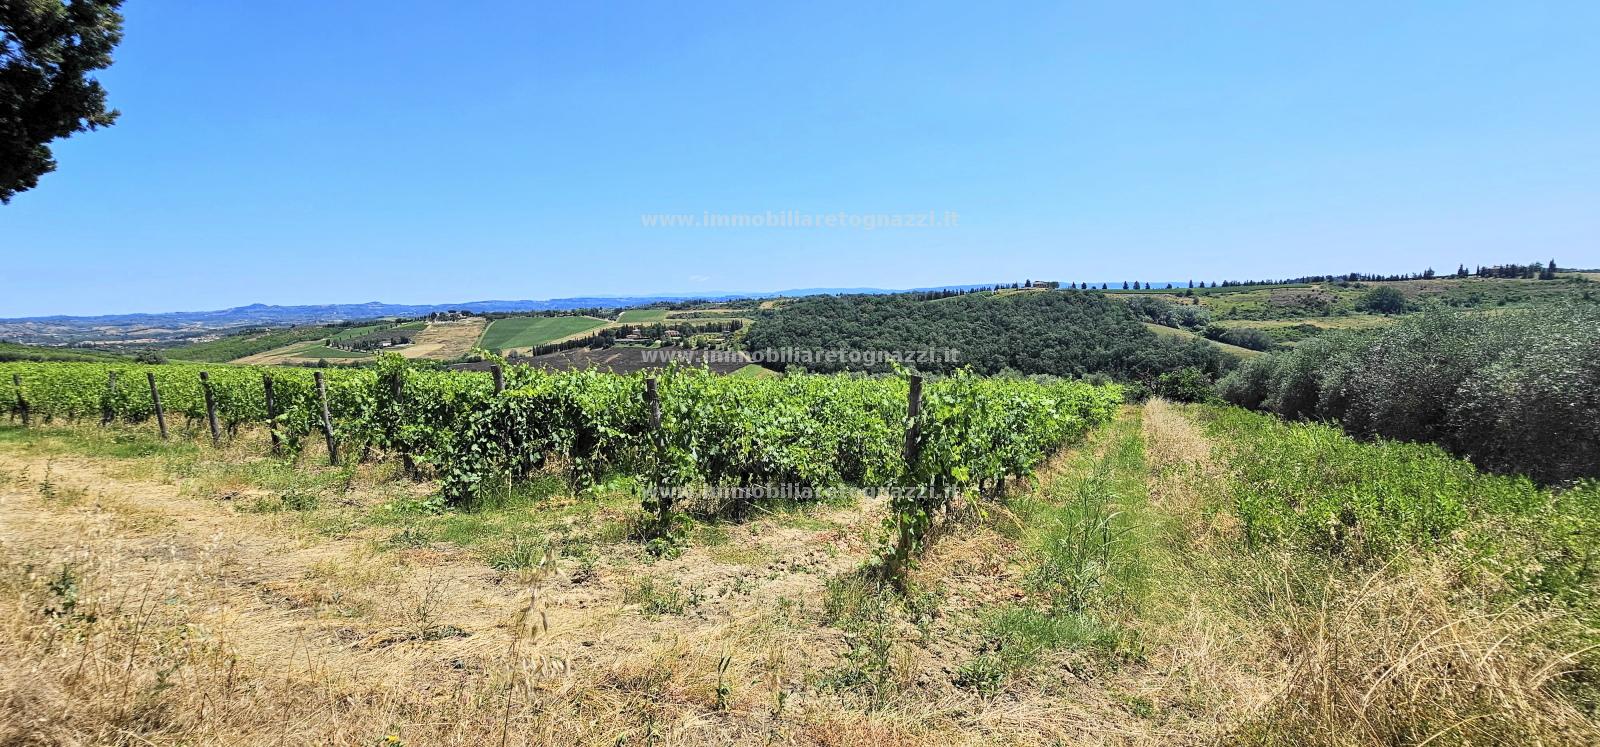 Terreno Agricolo in vendita a San Gimignano, 9999 locali, prezzo € 380.000 | PortaleAgenzieImmobiliari.it